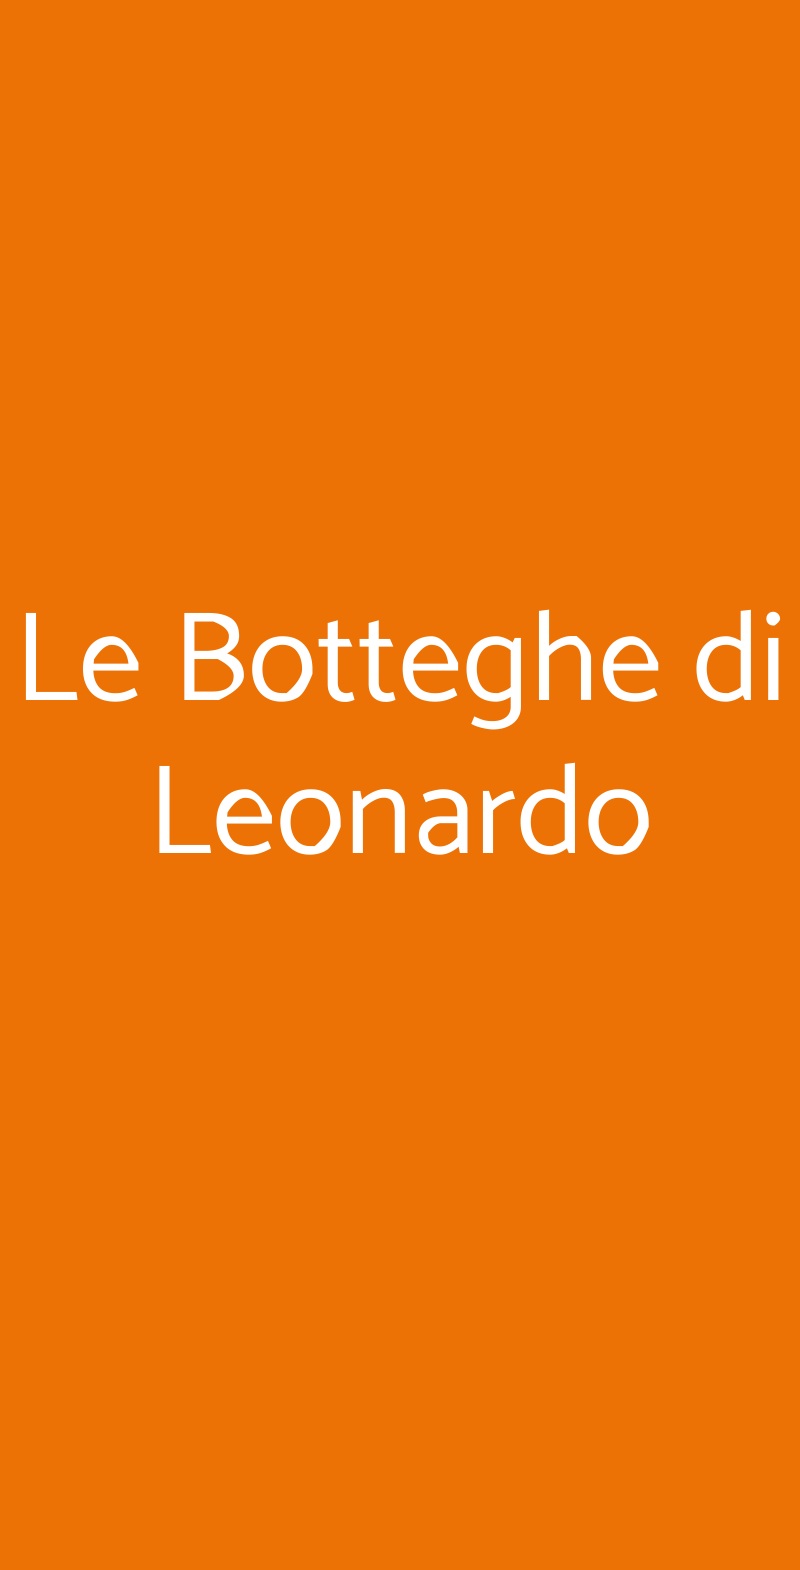 Le Botteghe di Leonardo Firenze menù 1 pagina